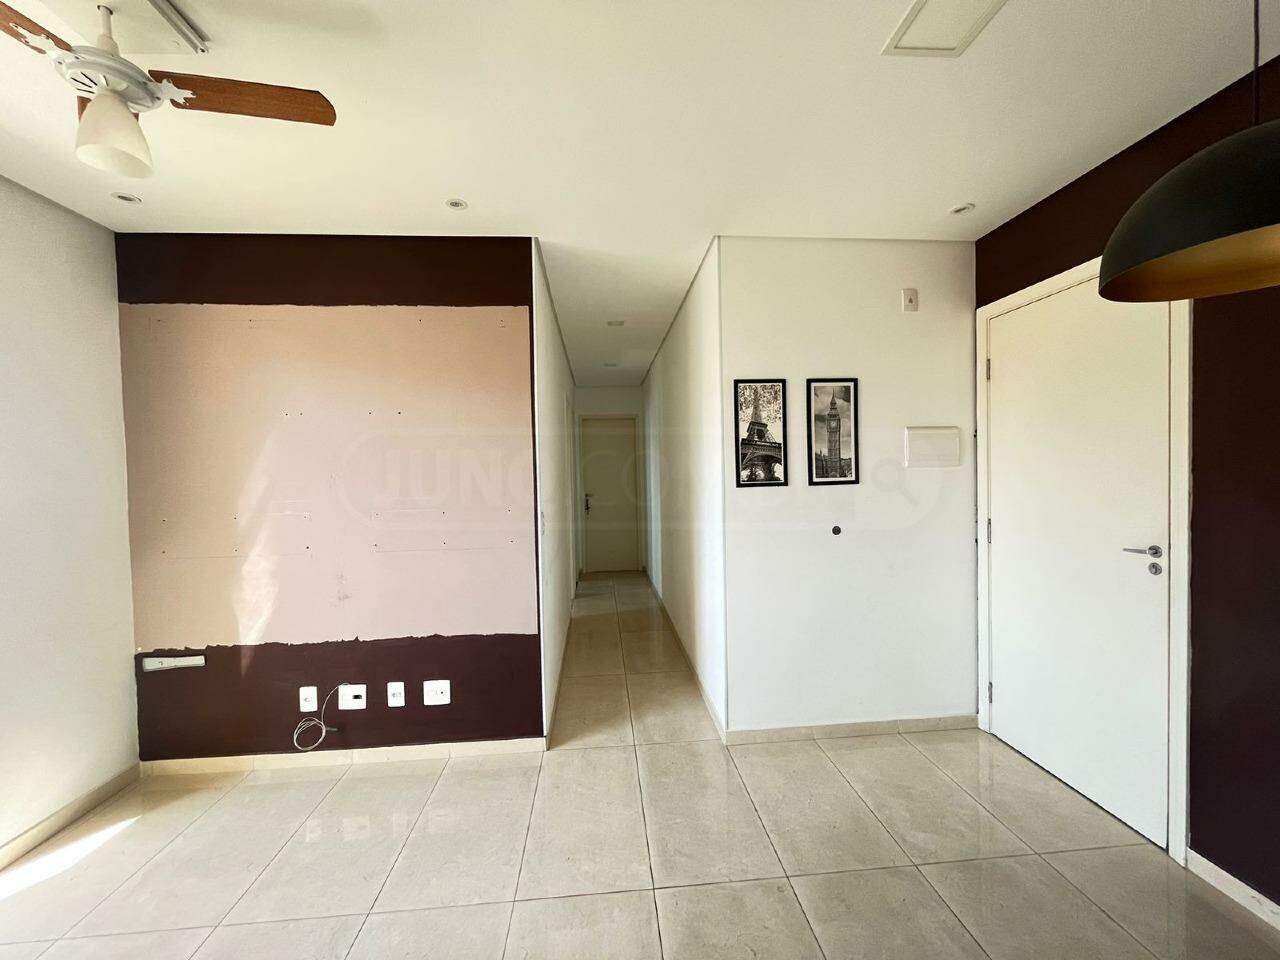 Apartamento à venda no Torres do Jardim III, 2 quartos, 1 vaga, no bairro Torres do Jardim III em Piracicaba - SP